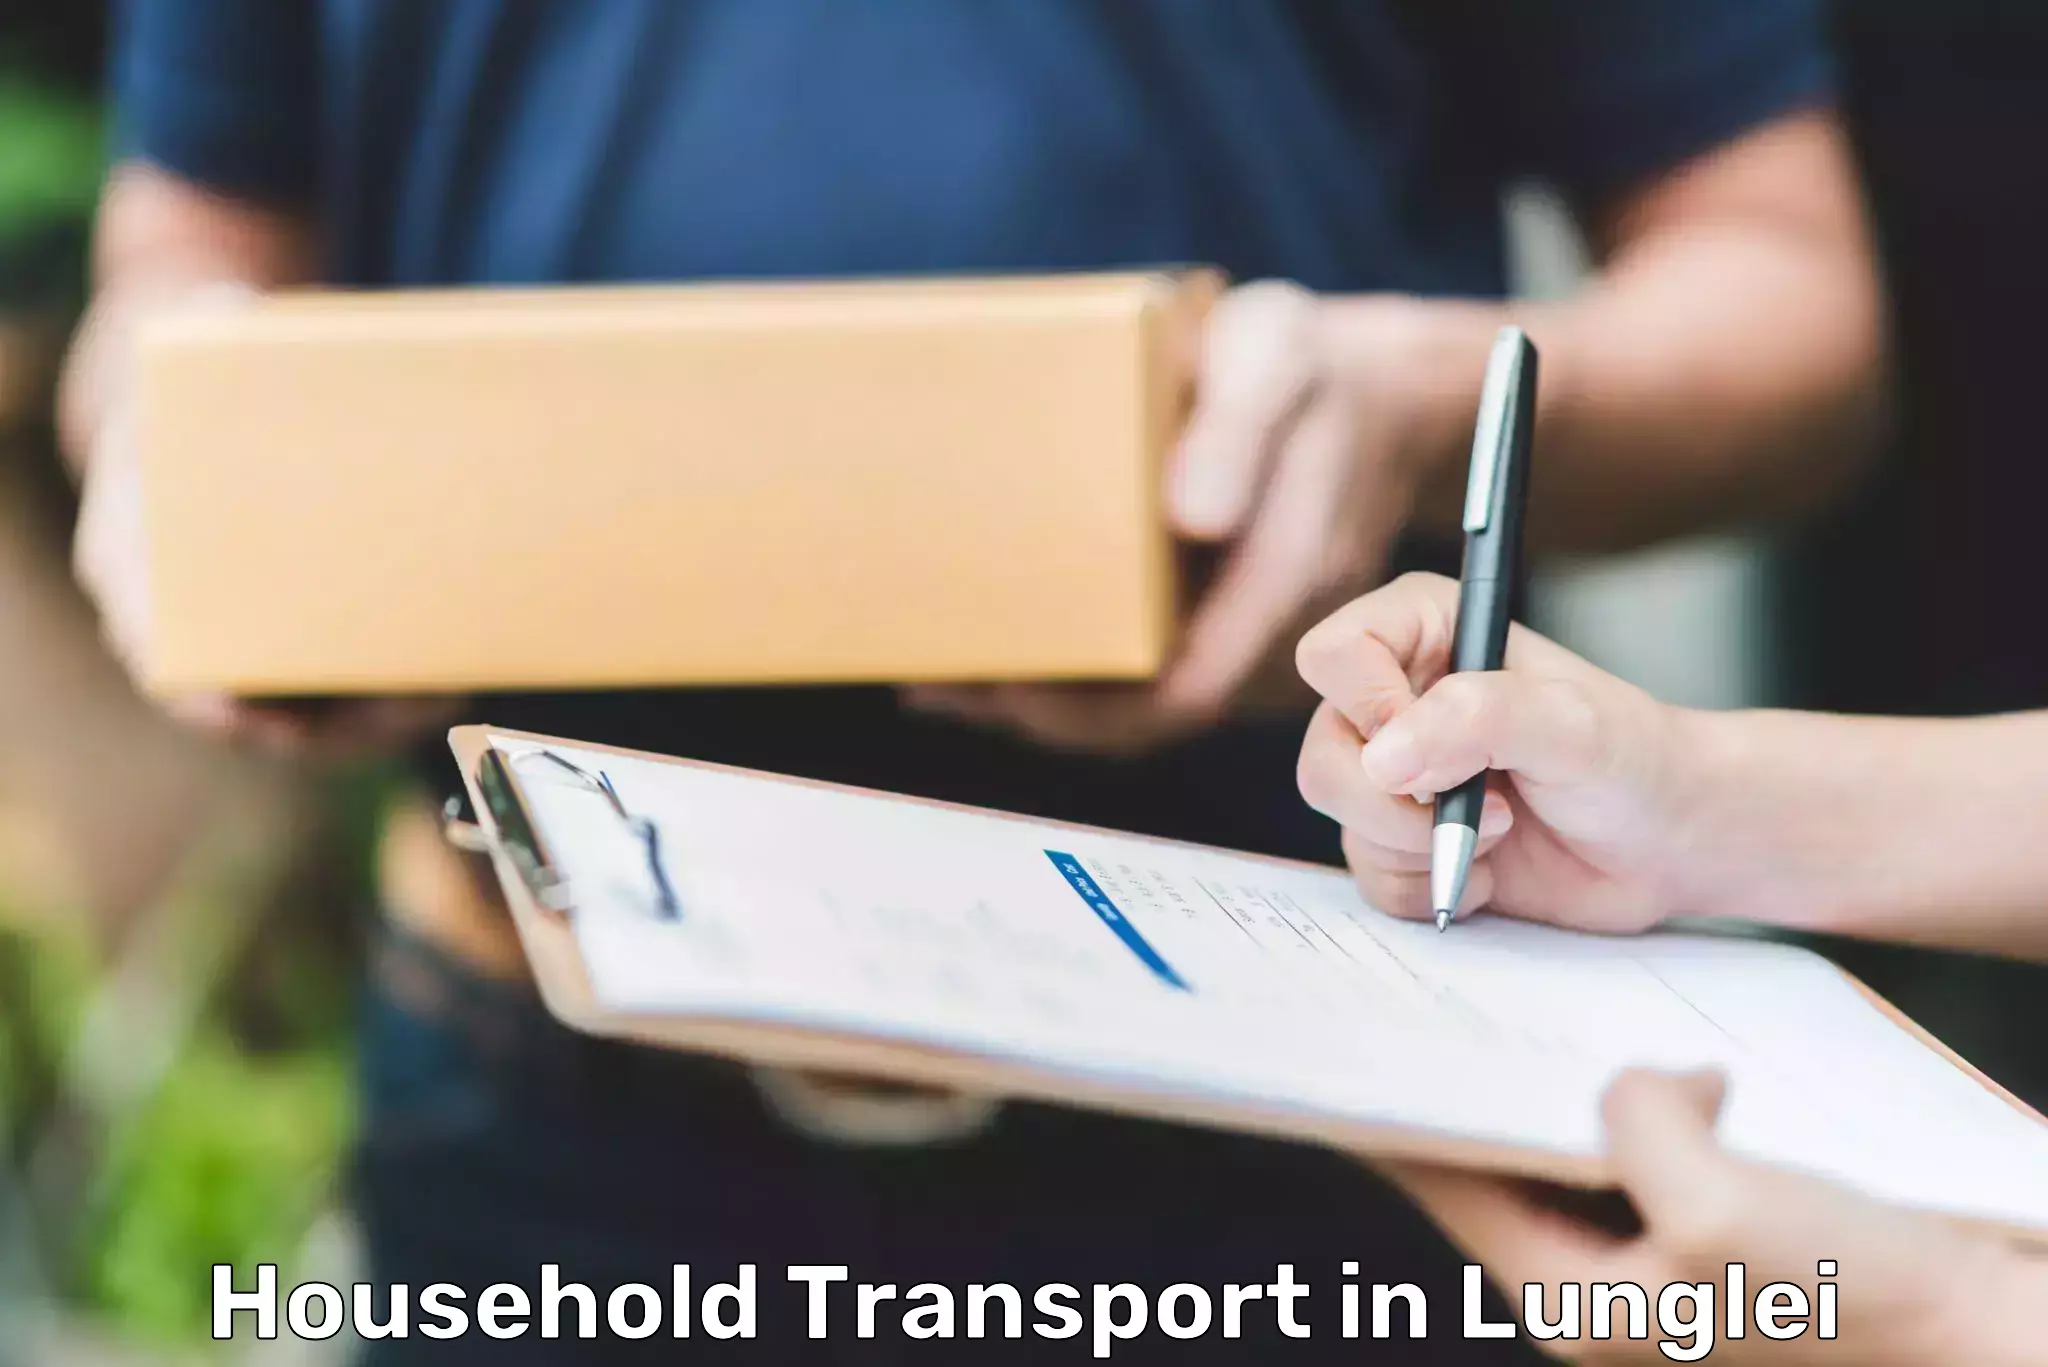 Quality furniture transport in Lunglei